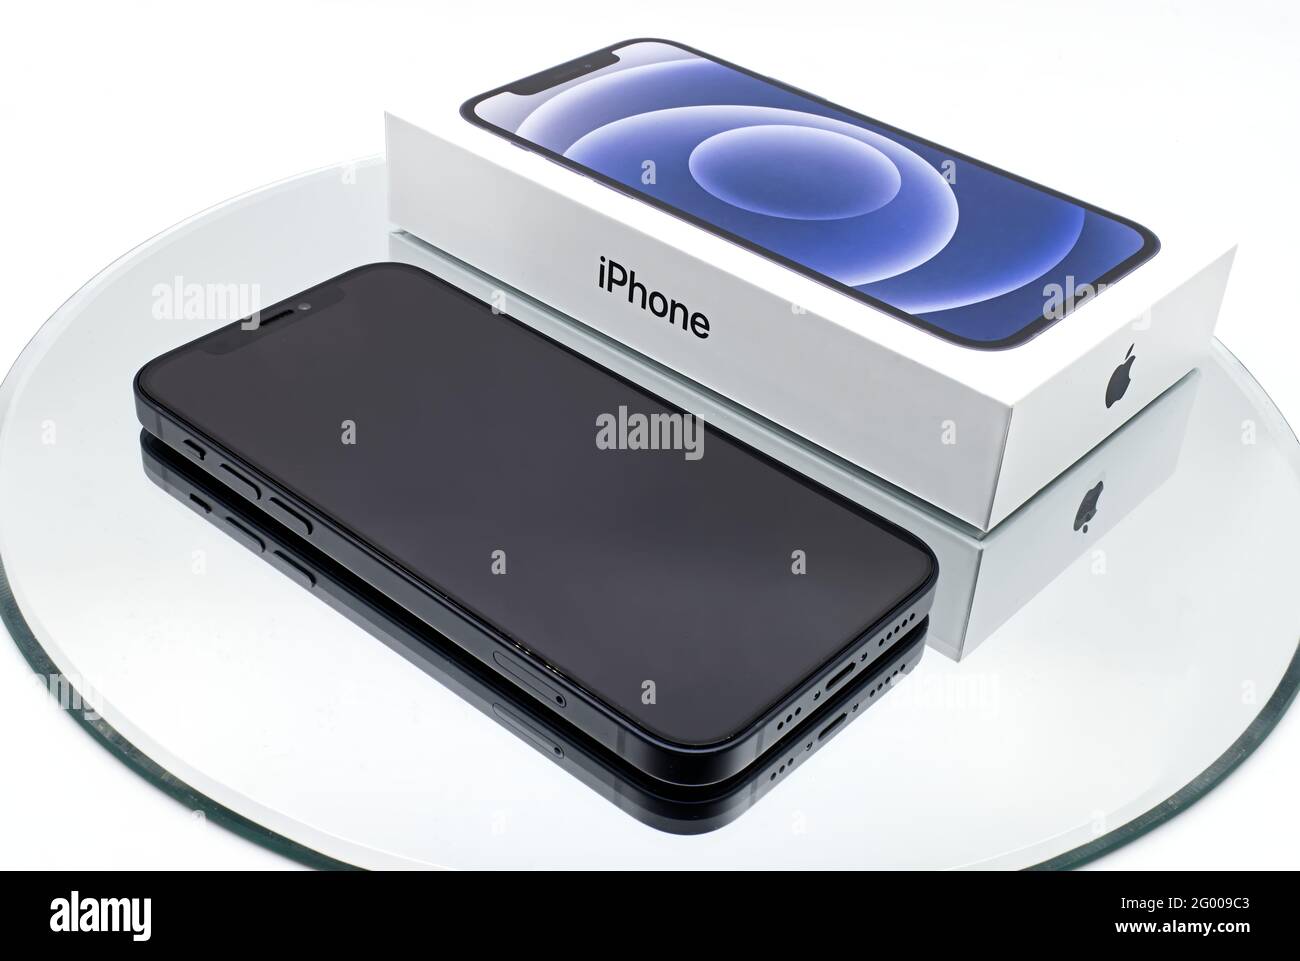 Bologna - Italien - 27. April 2021: IPhone 12 Smartphone mit von Apple Inc. Entwickelter Box auf weißem Hintergrund isoliert. Stockfoto